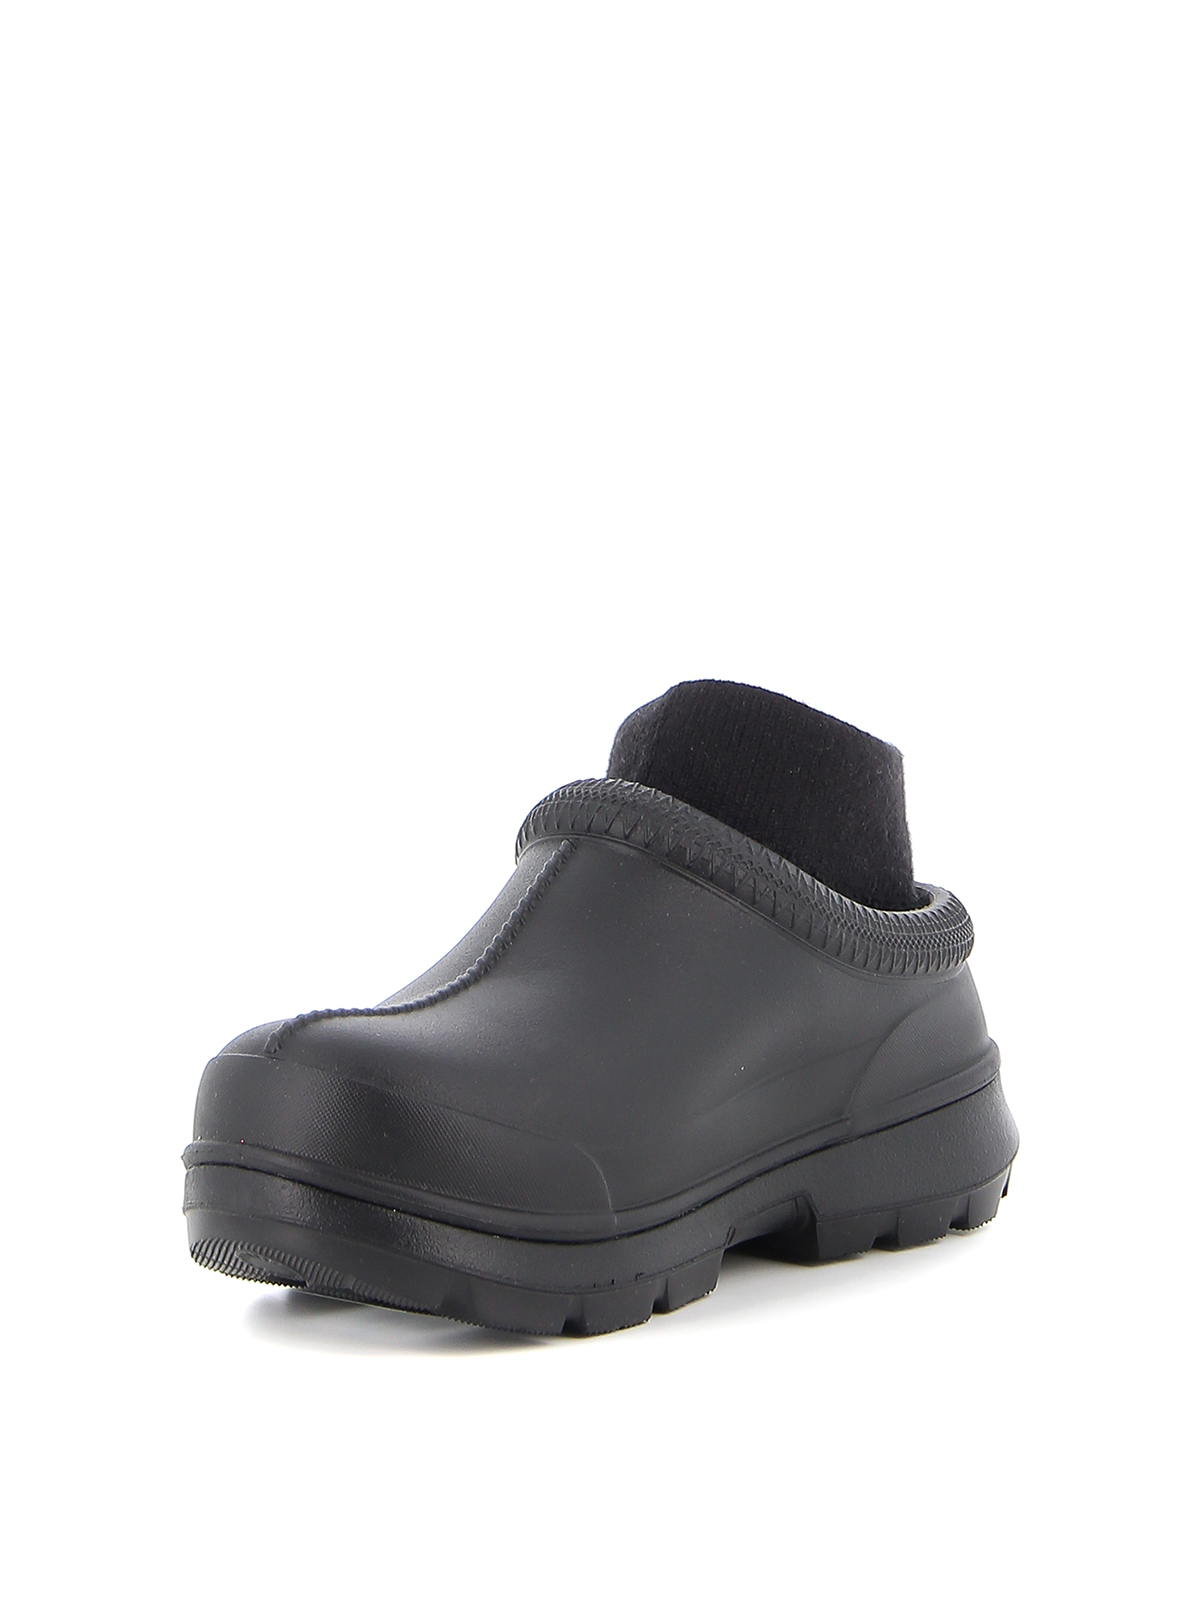 Ankle boots Ugg - Tasman ankle boots - 1125730BLACK | Shop online at iKRIX